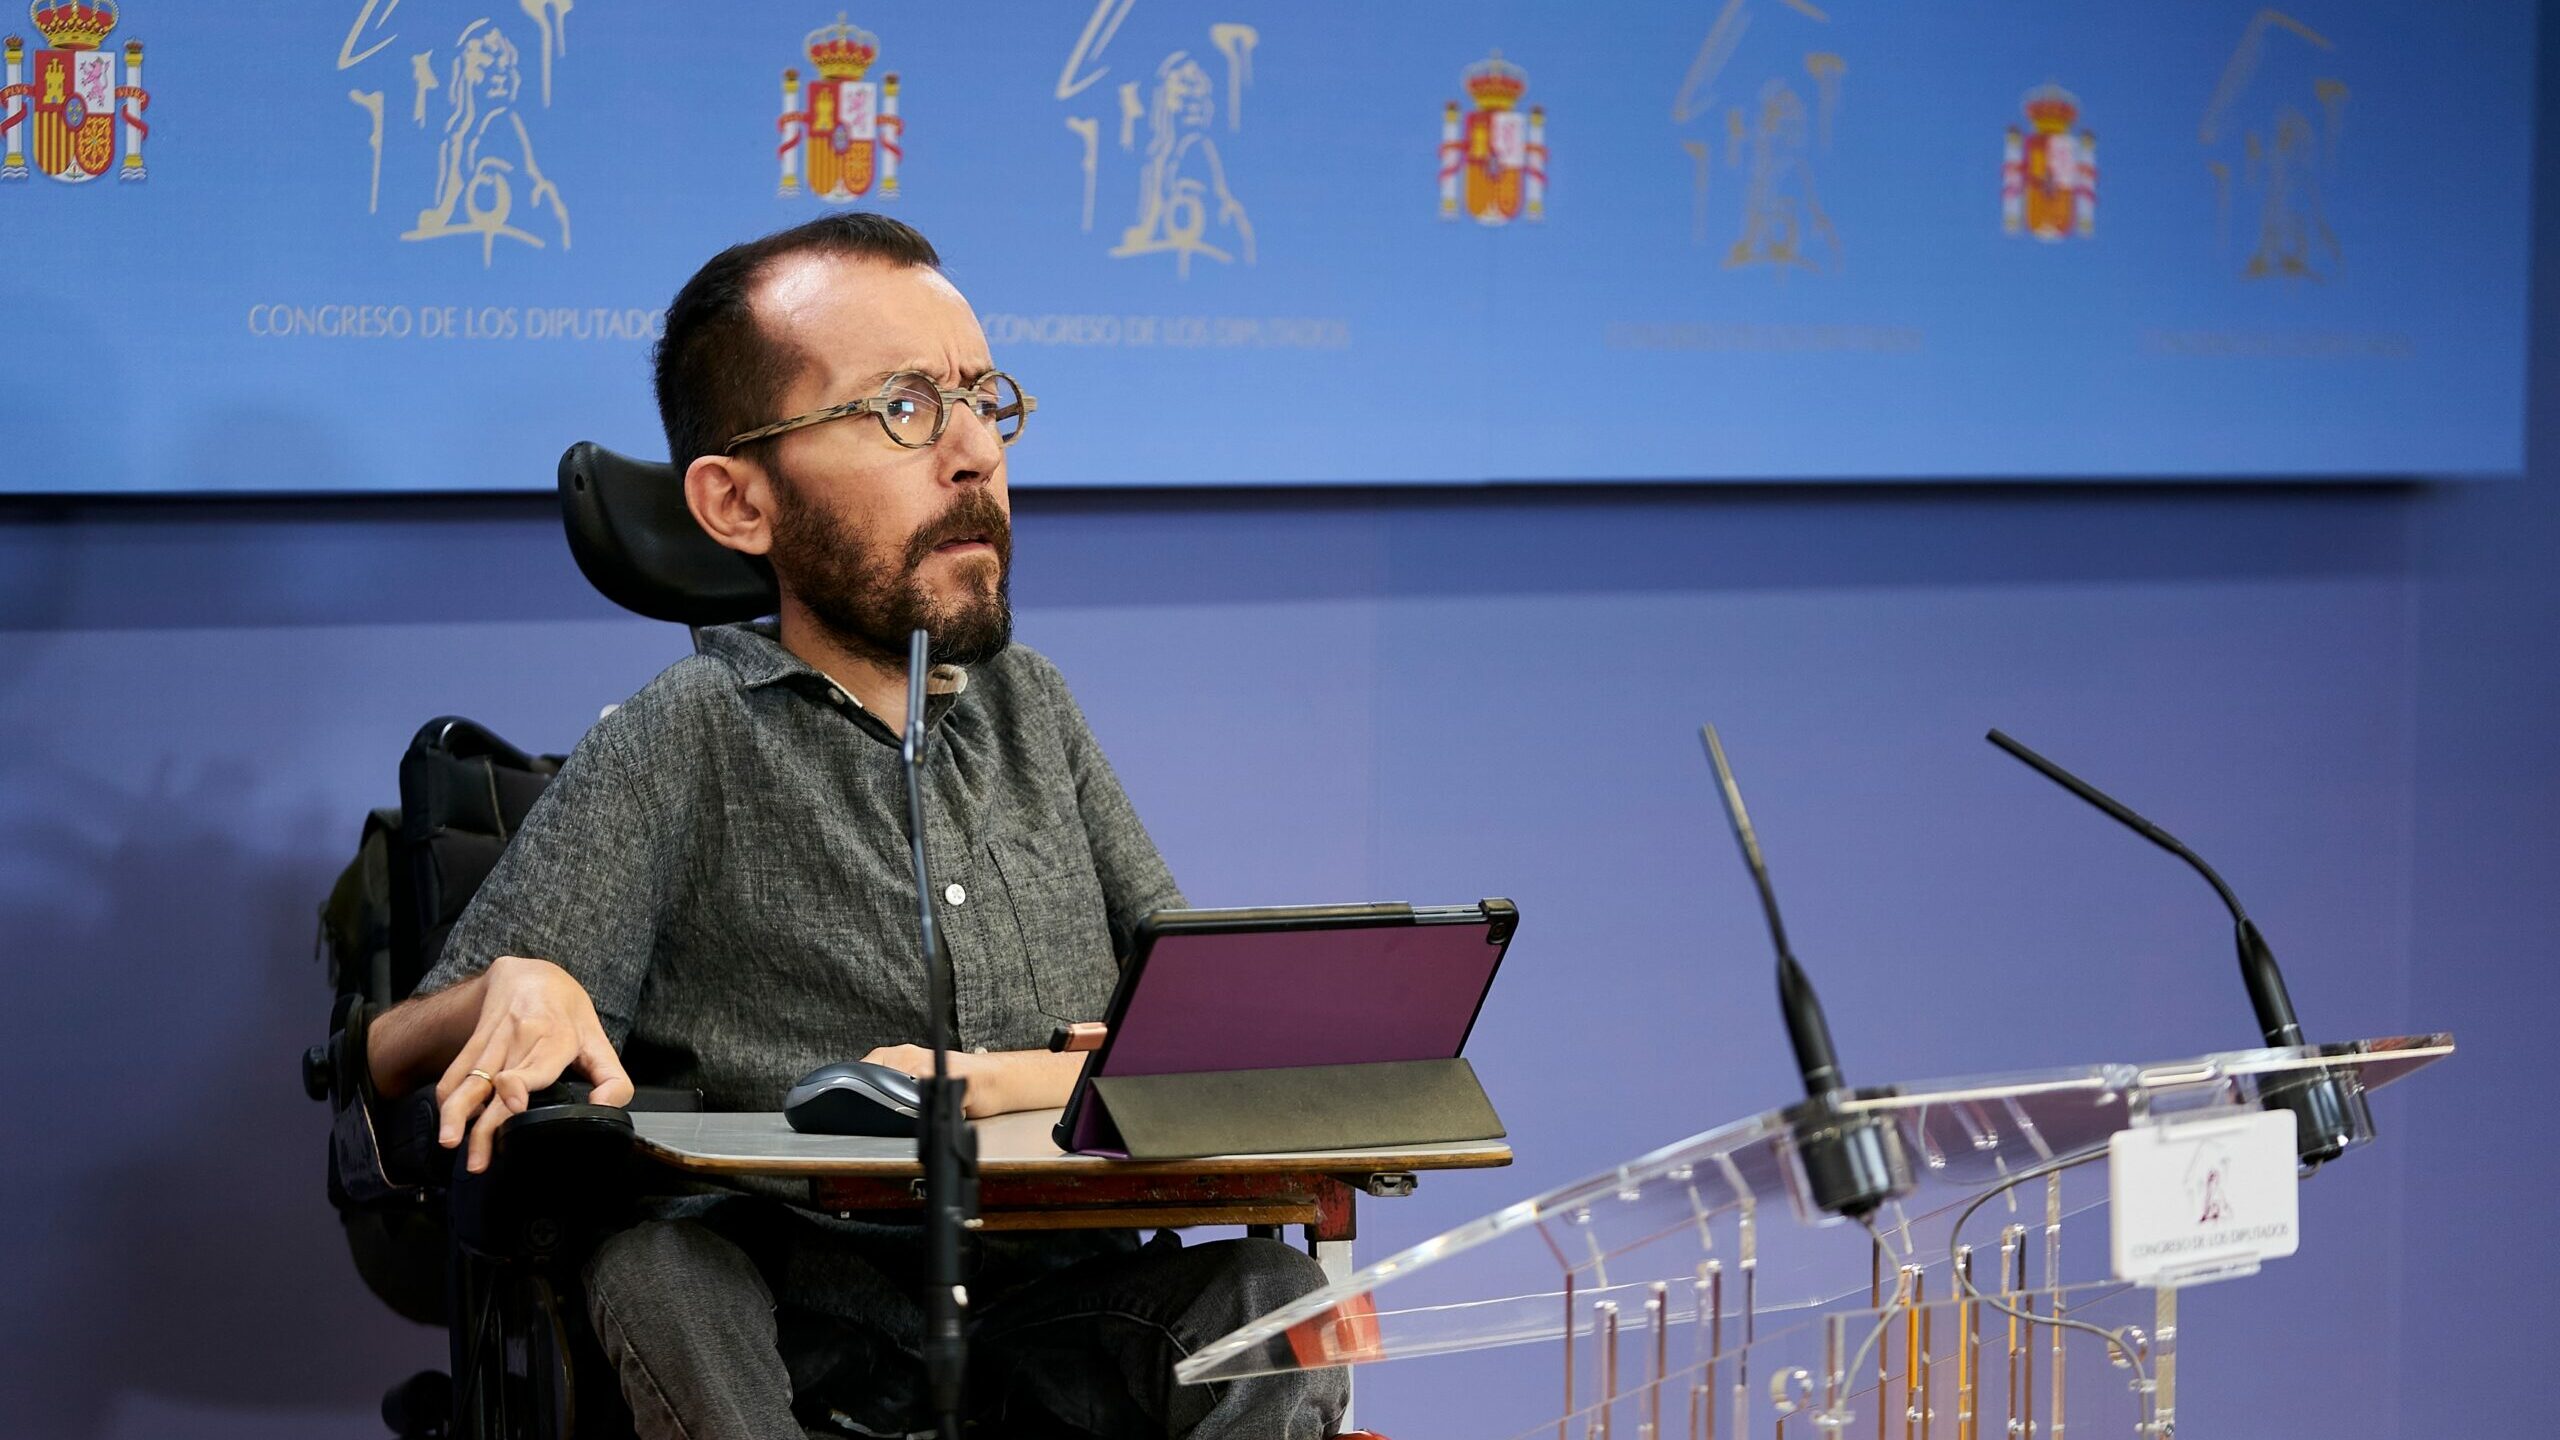 El PSOE da la bienvenida a los votos de Cs para aprobar la reforma laboral mientras Podemos rechaza esa vía